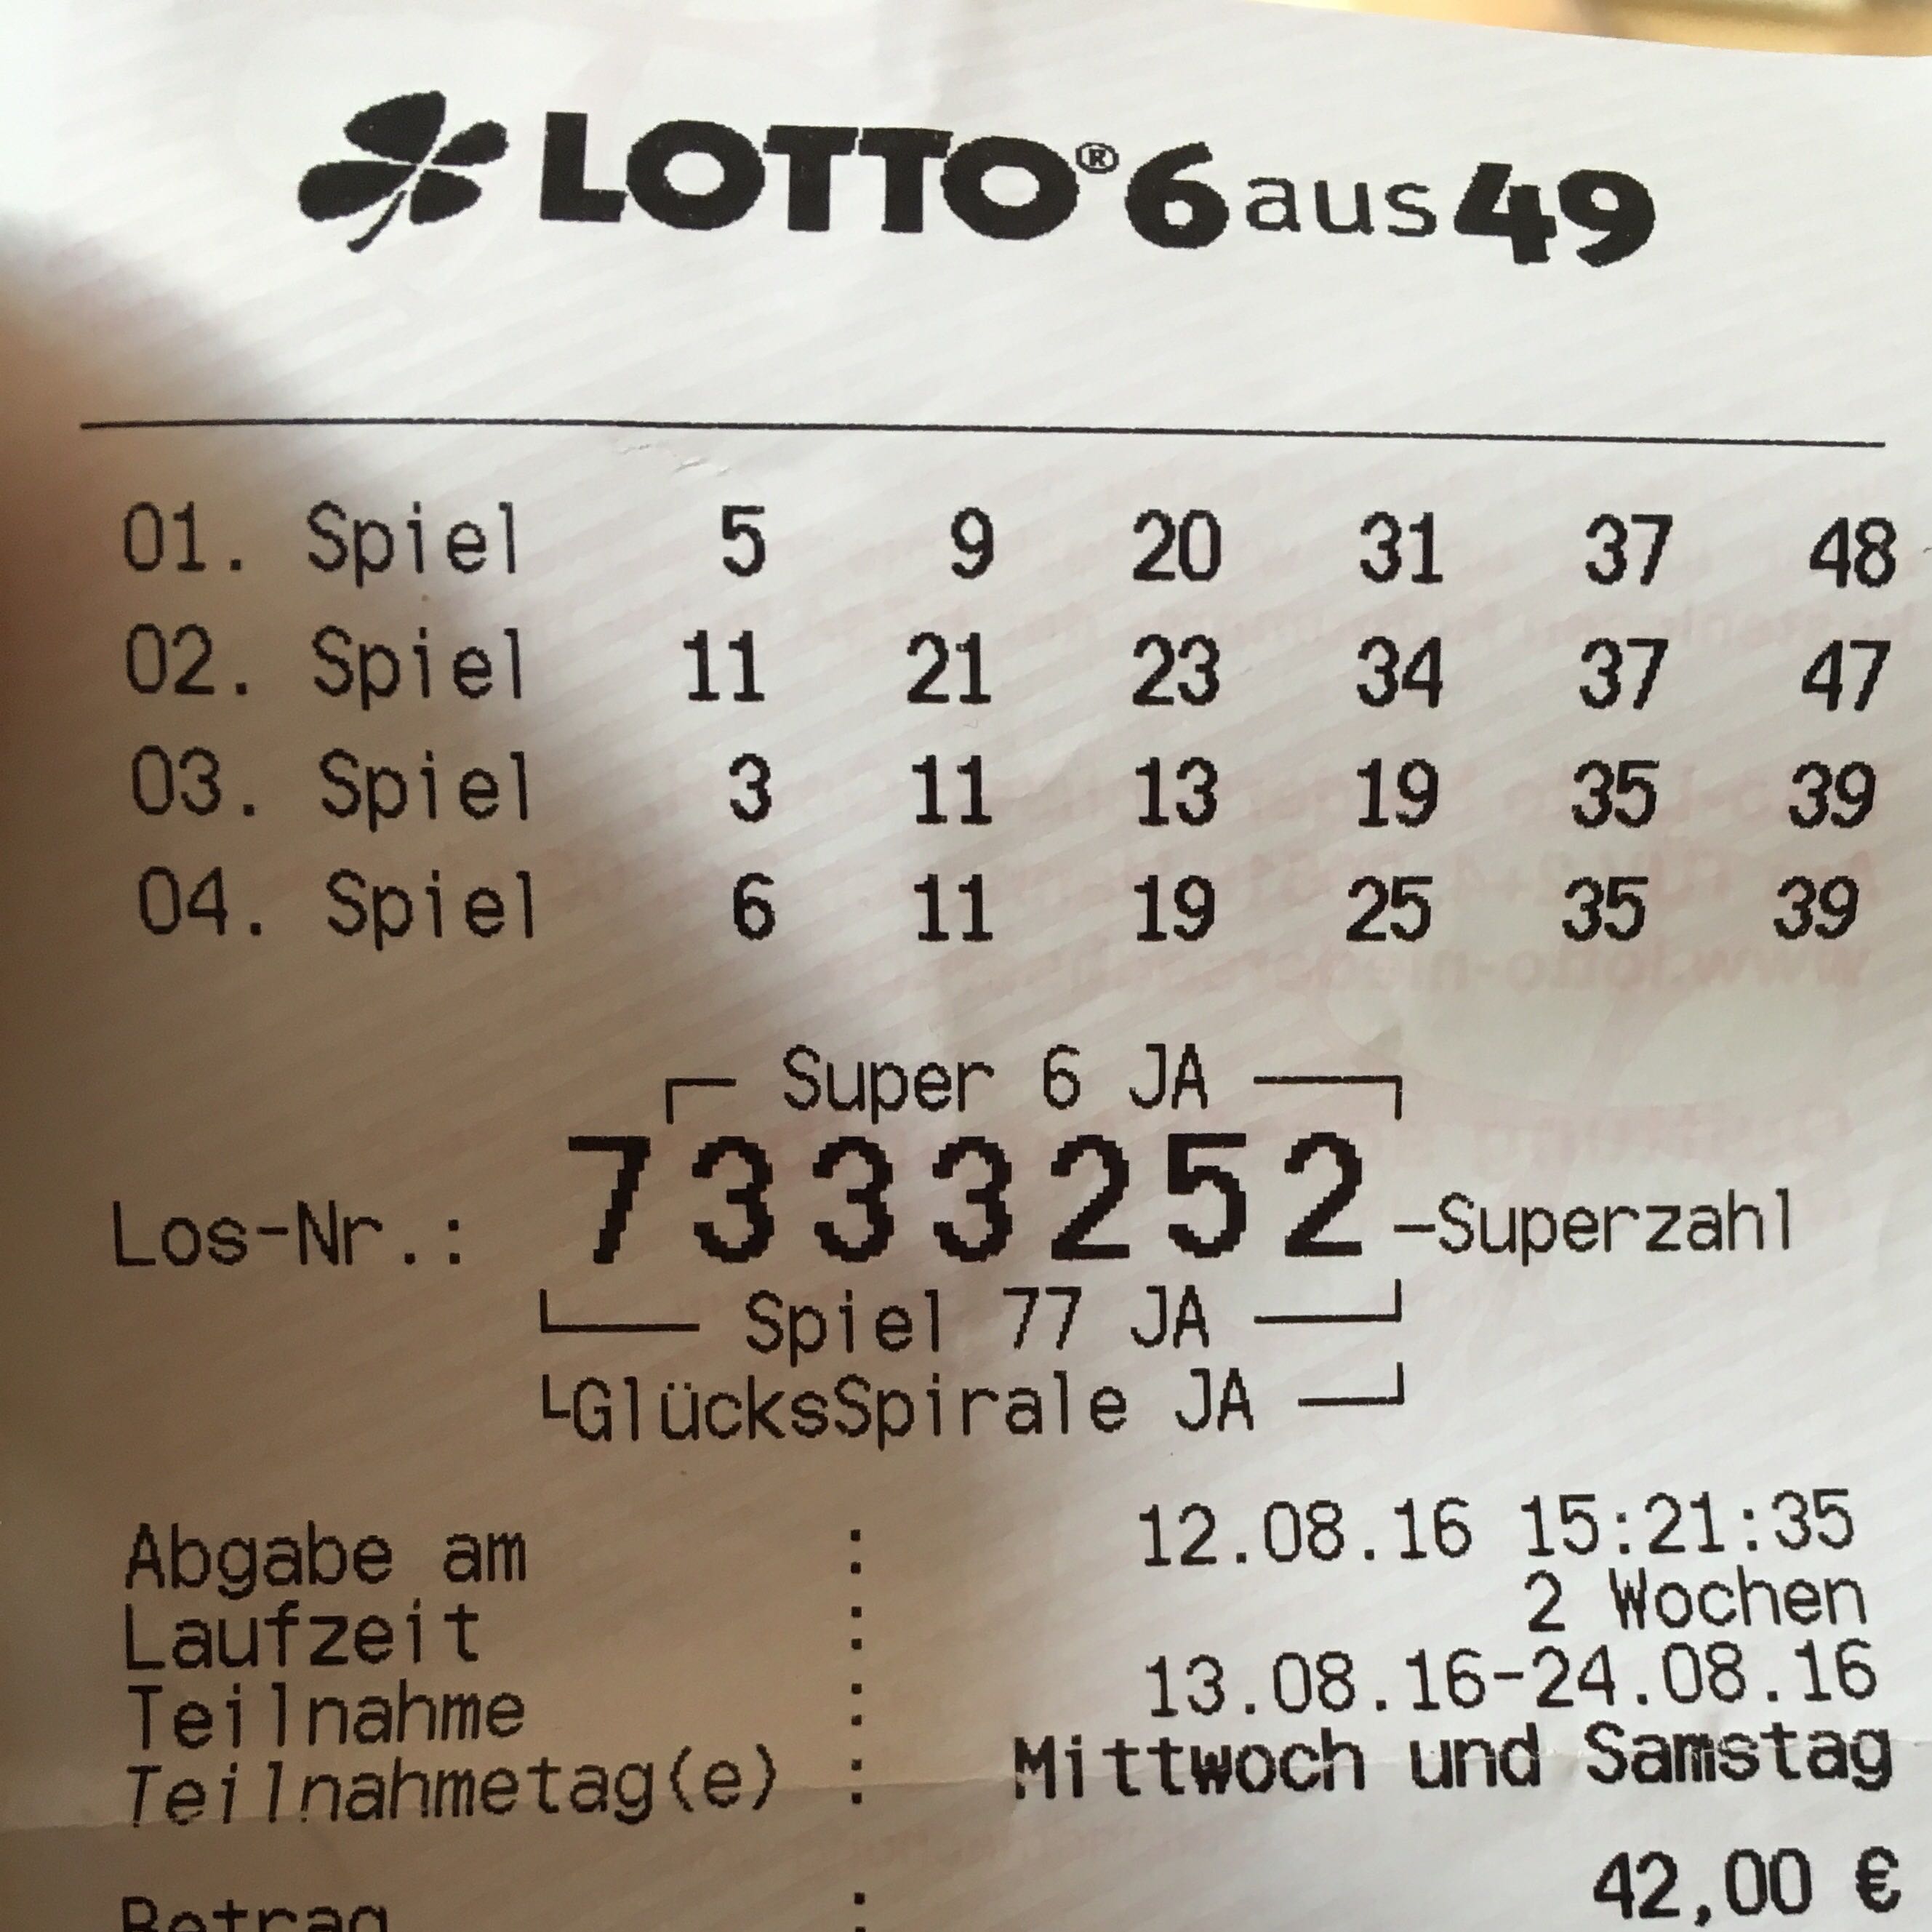 Die HГ¤ufigsten Lottozahlen